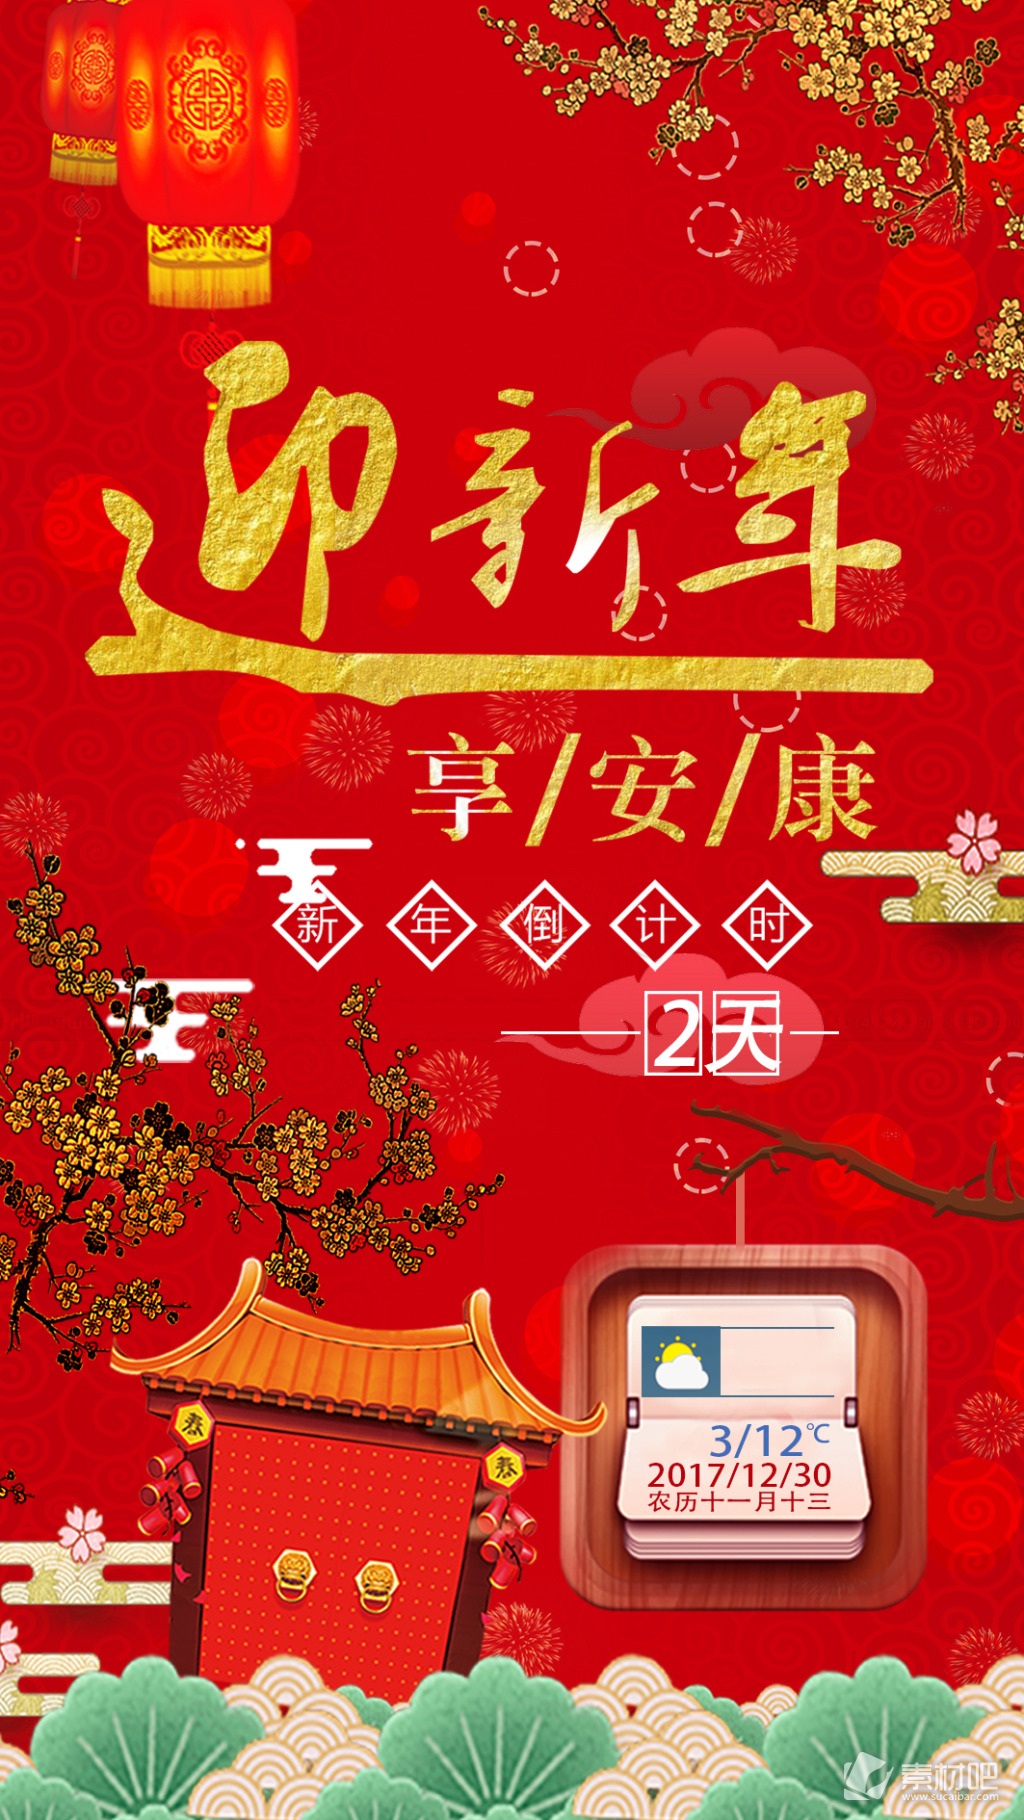 红色中式迎新年倒计时节日海报素材